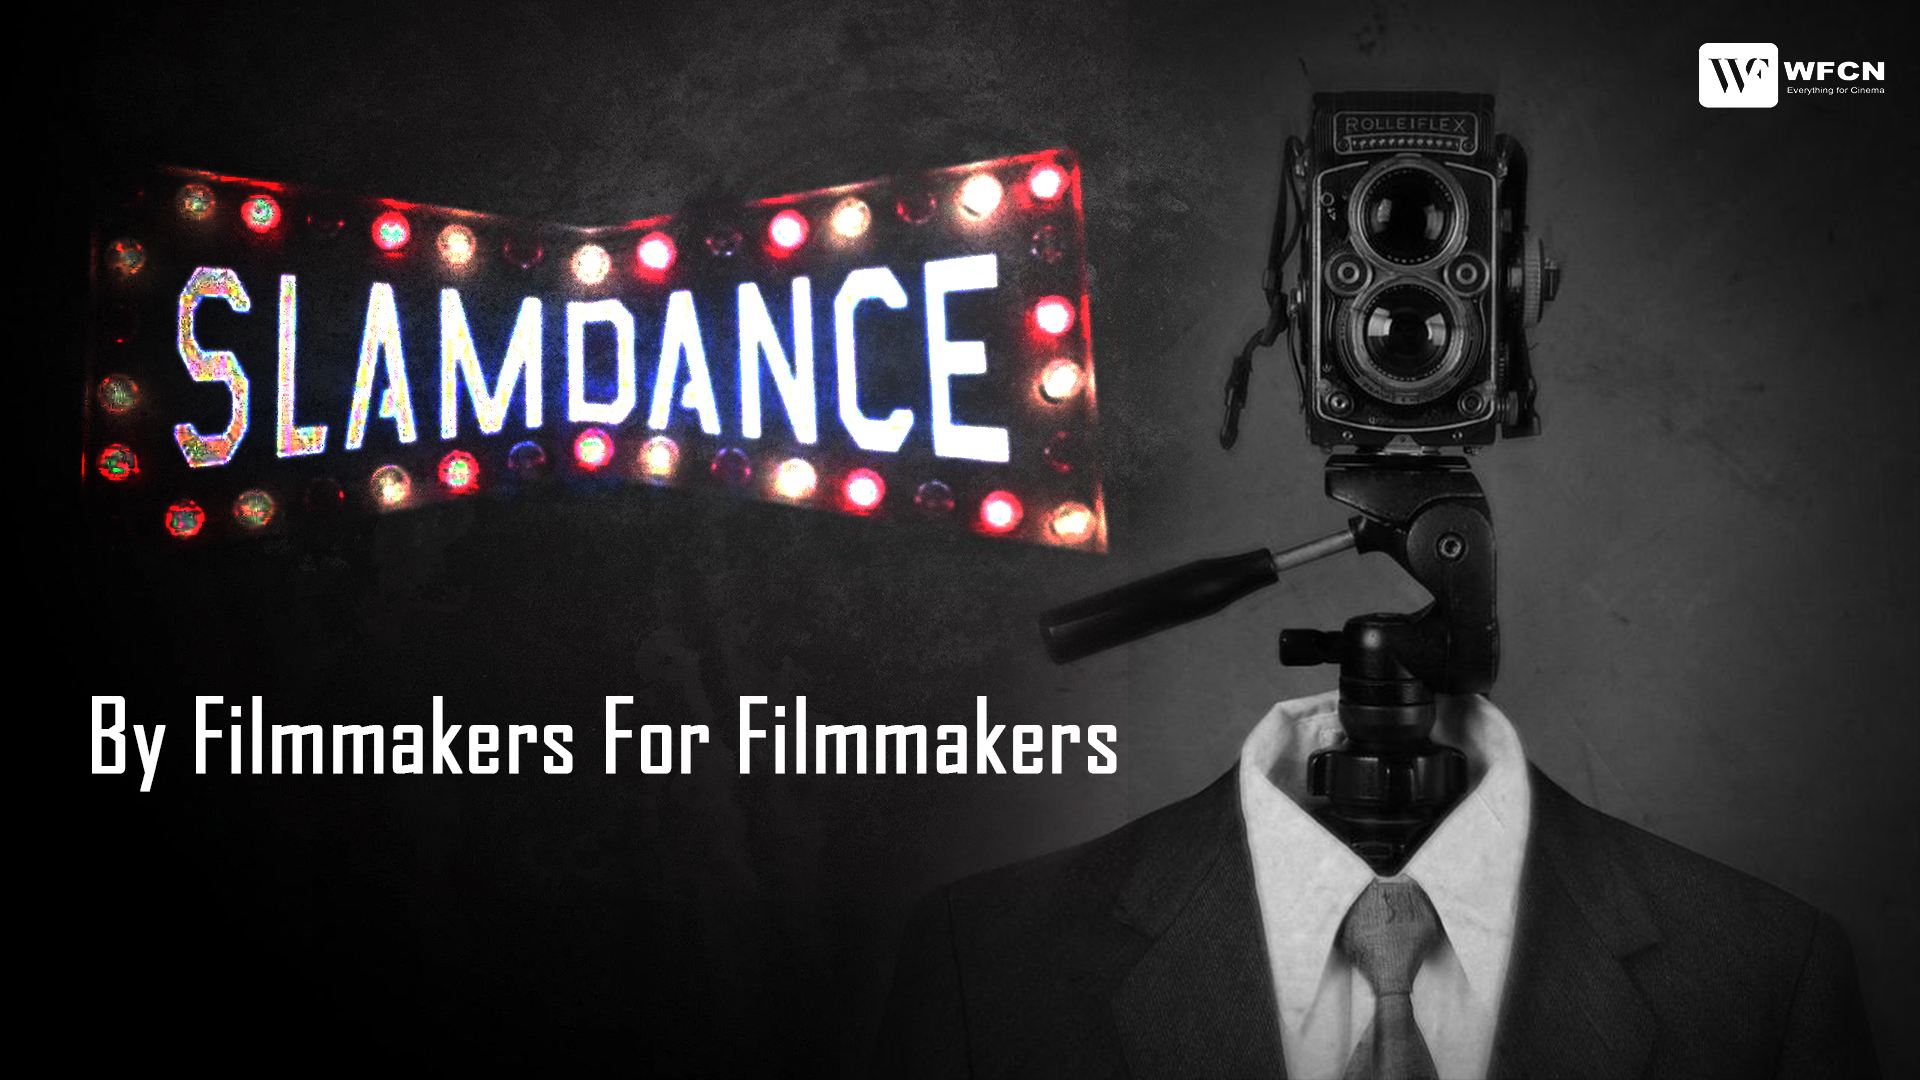 Slamdance: By Filmmakers For Filmmakers